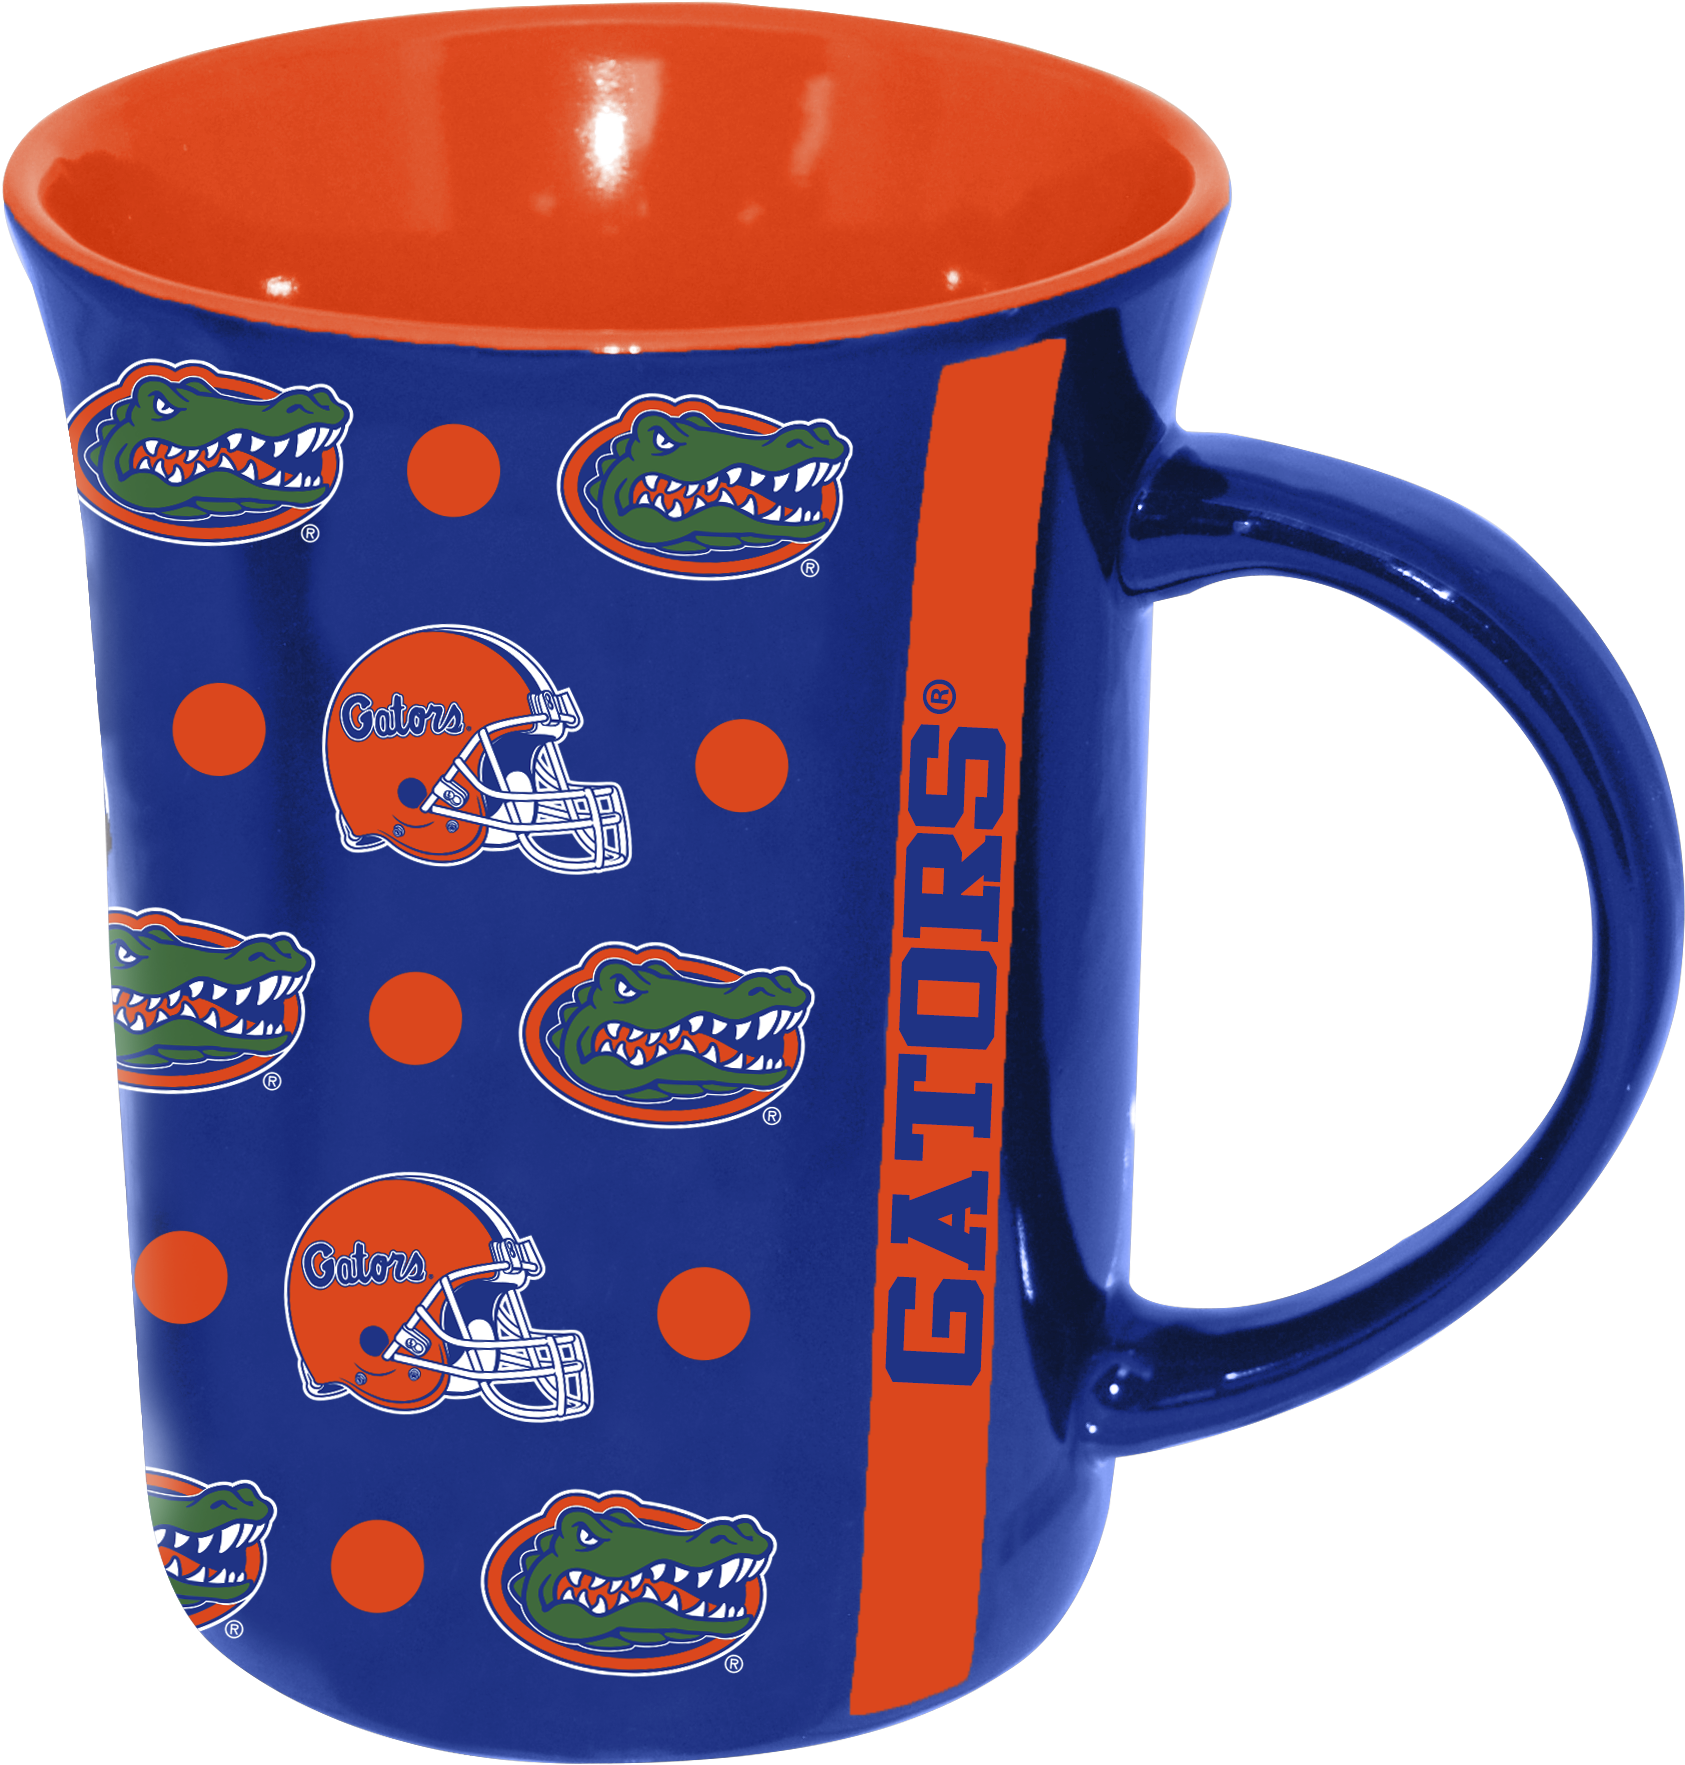 Florida Gators Themed Coffee Mug PNG image